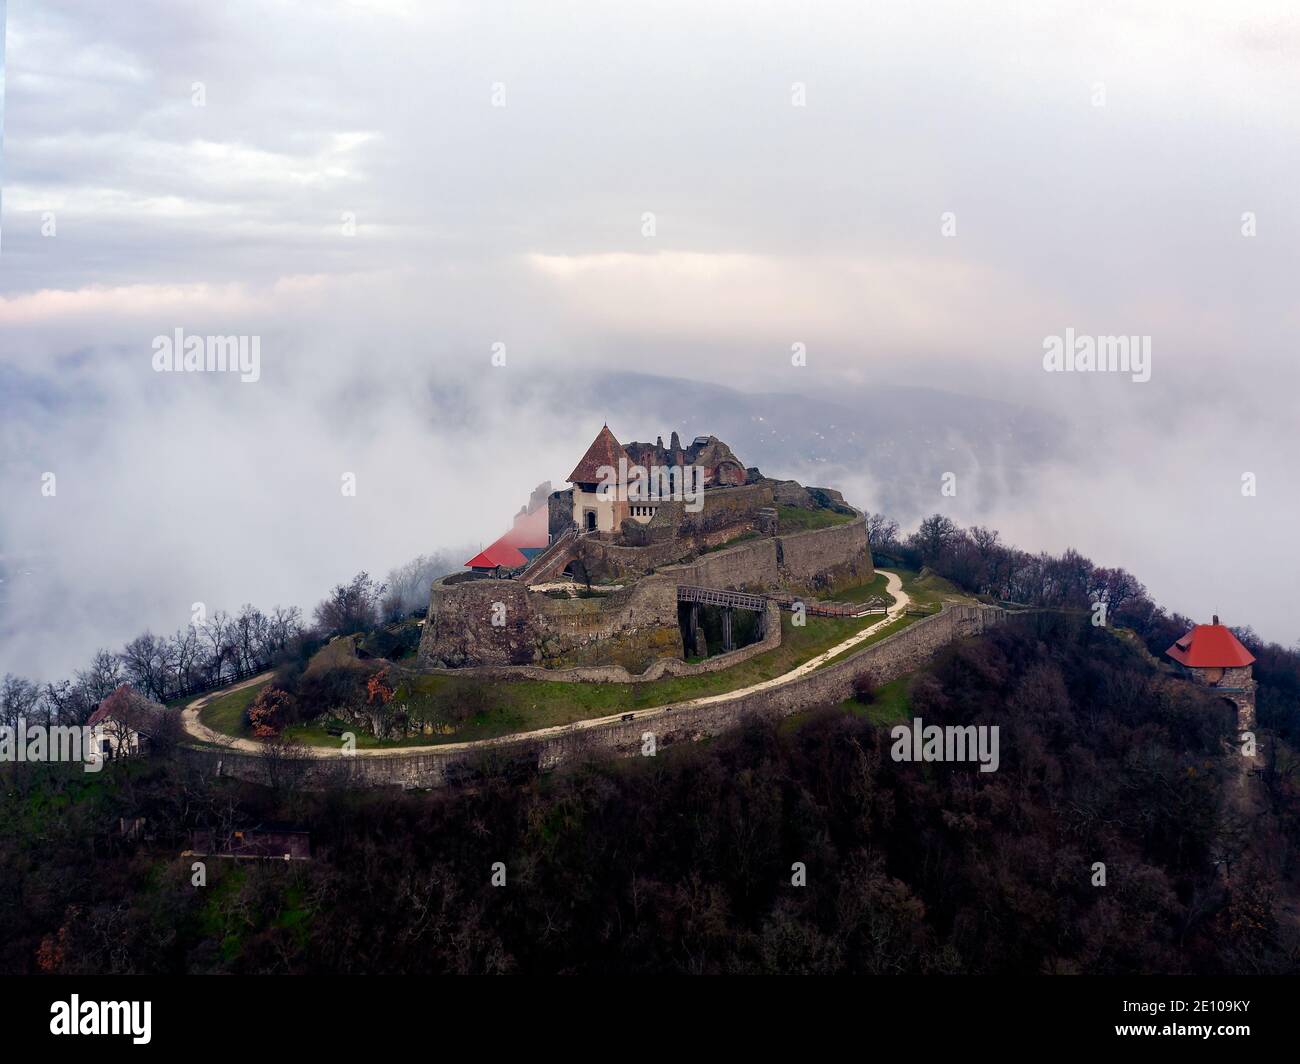 Les ruines du château de la citadelle de Visegrad dans la courbe du Danube en Hongrie. Paysage aérien fantastique par mauvais temps. Lever de soleil brumeux et nuageux Banque D'Images